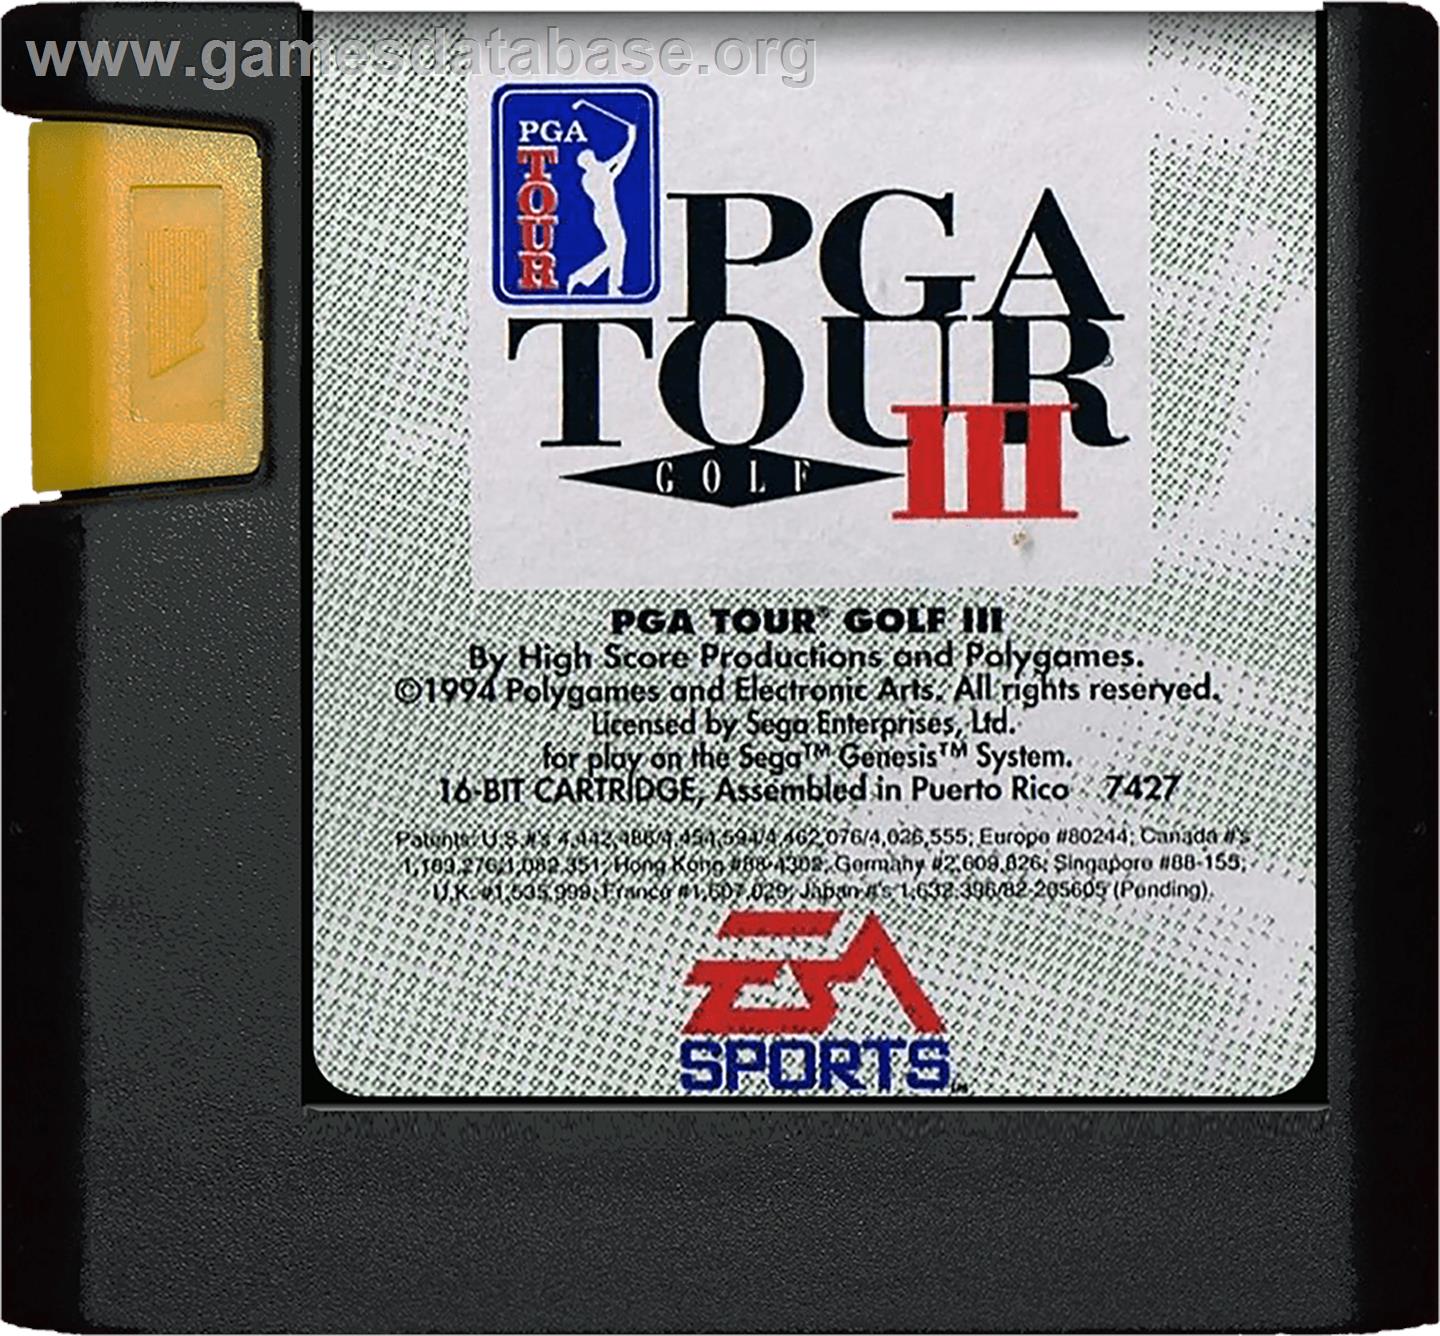 PGA Tour Golf 3 - Sega Genesis - Artwork - Cartridge